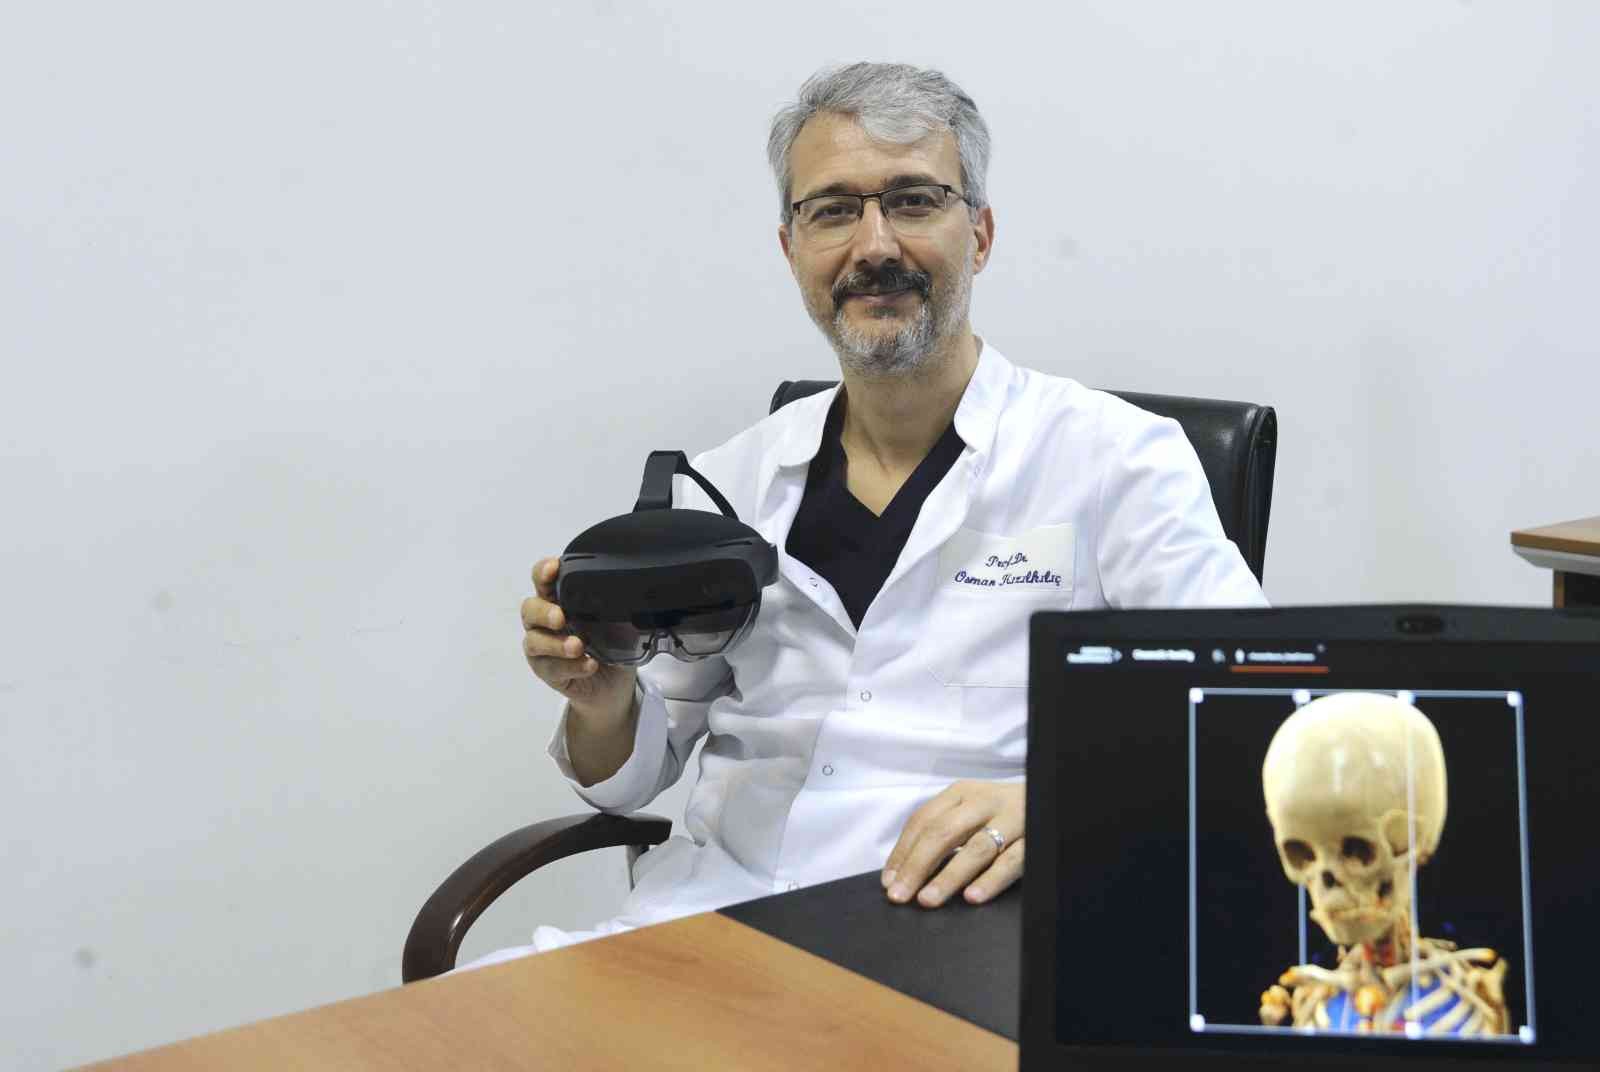 Sinematik Gerçeklik uygulaması ile klinik görüntüler detaylı olarak 3D şeklinde izlenebiliyor. Geliştirilen uygulama özellikle beyin ve damar ...